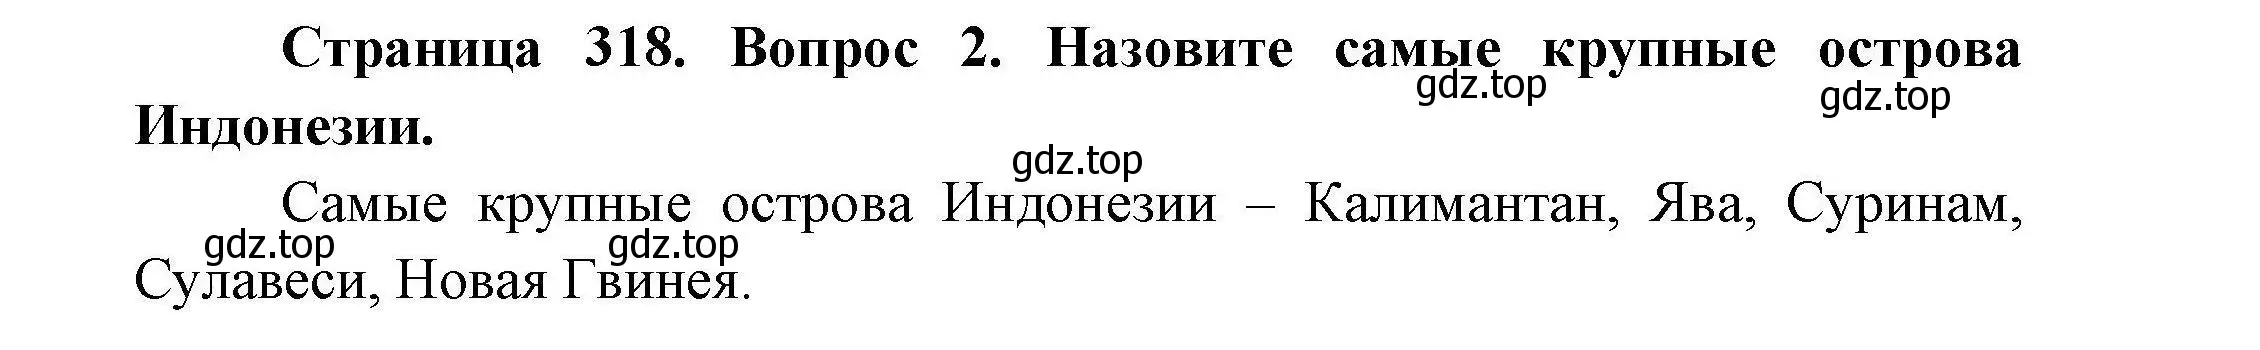 Решение номер 2 (страница 318) гдз по географии 7 класс Коринская, Душина, учебник